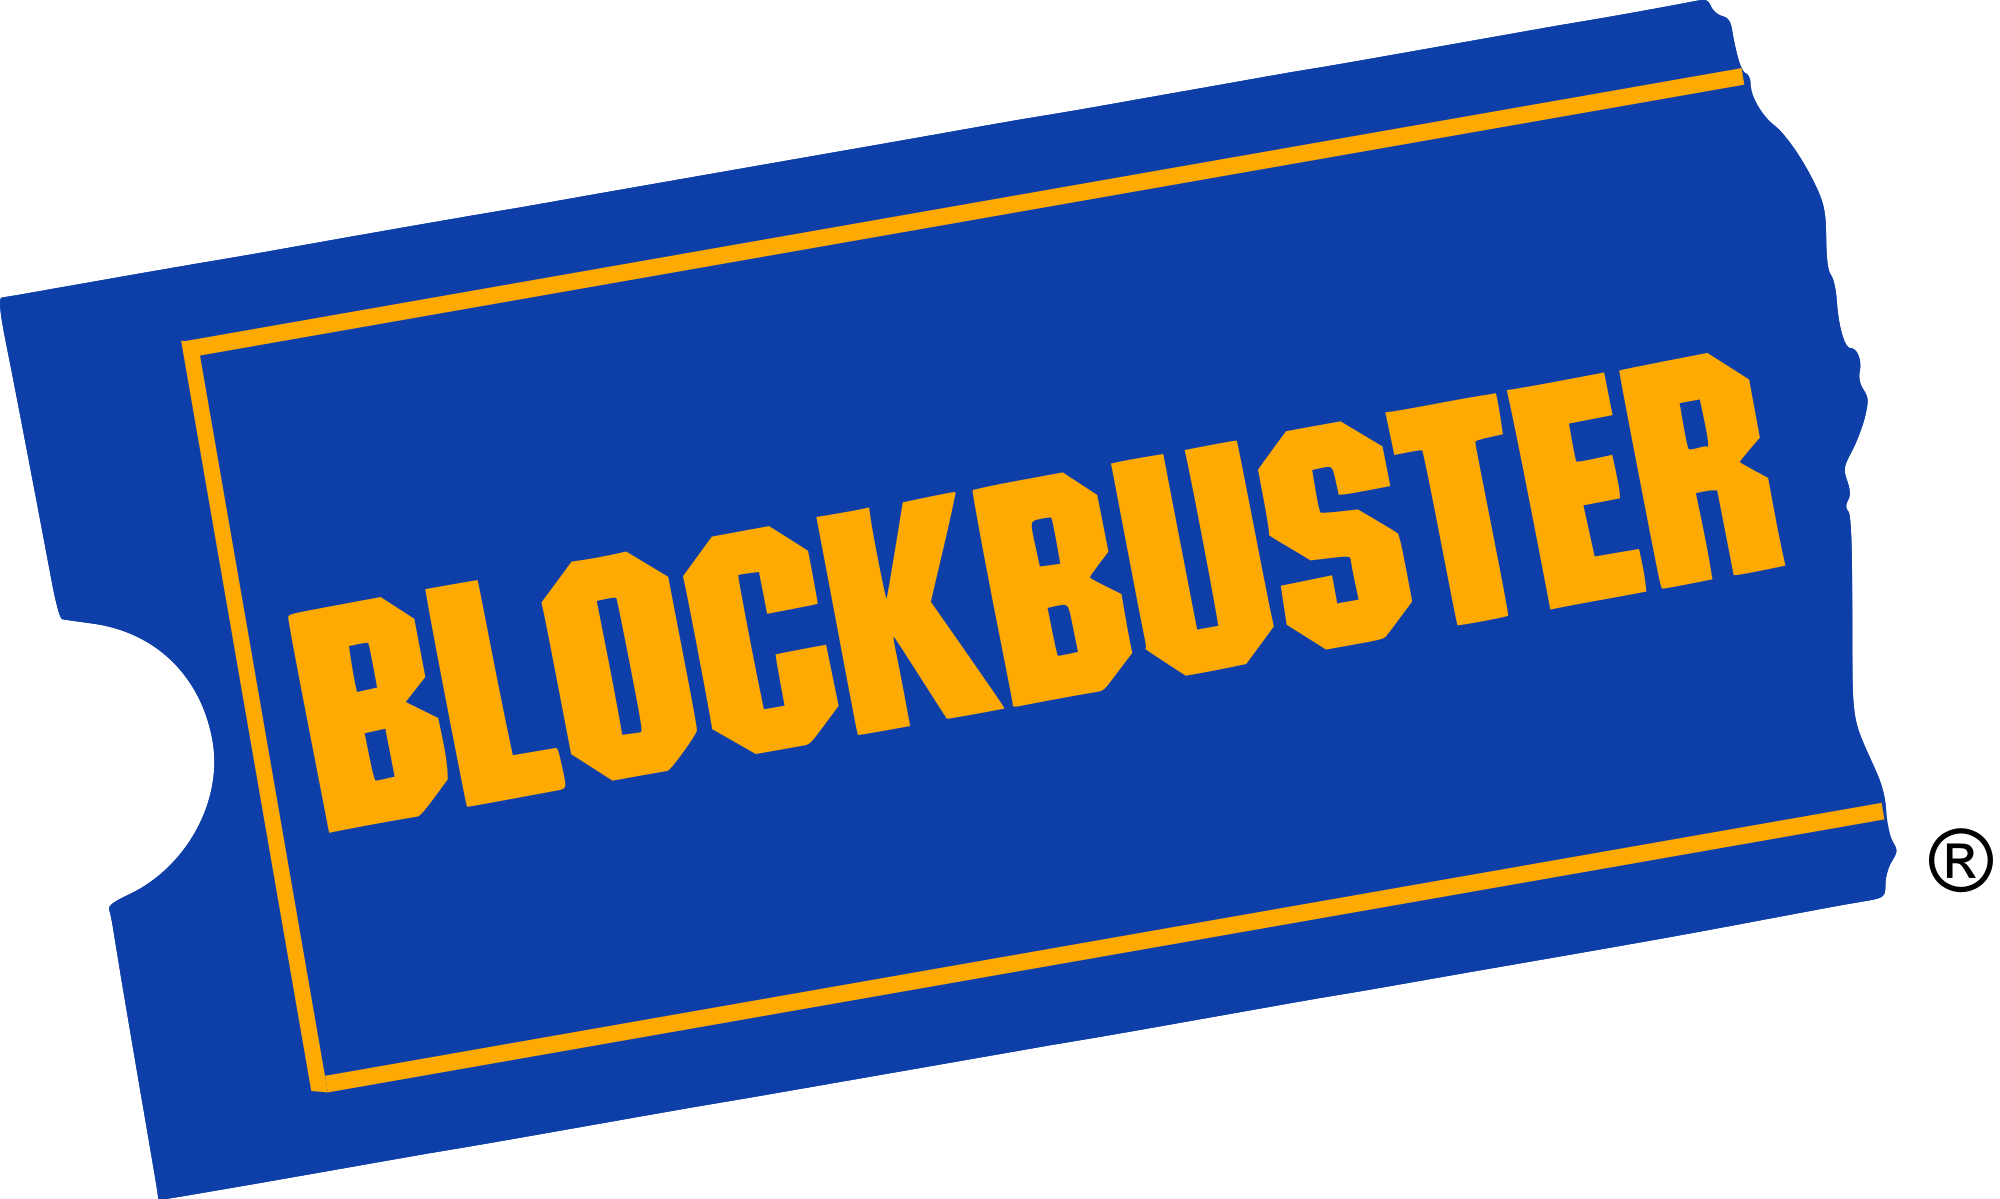 Blockbuster Logo - Blockbuster LLC